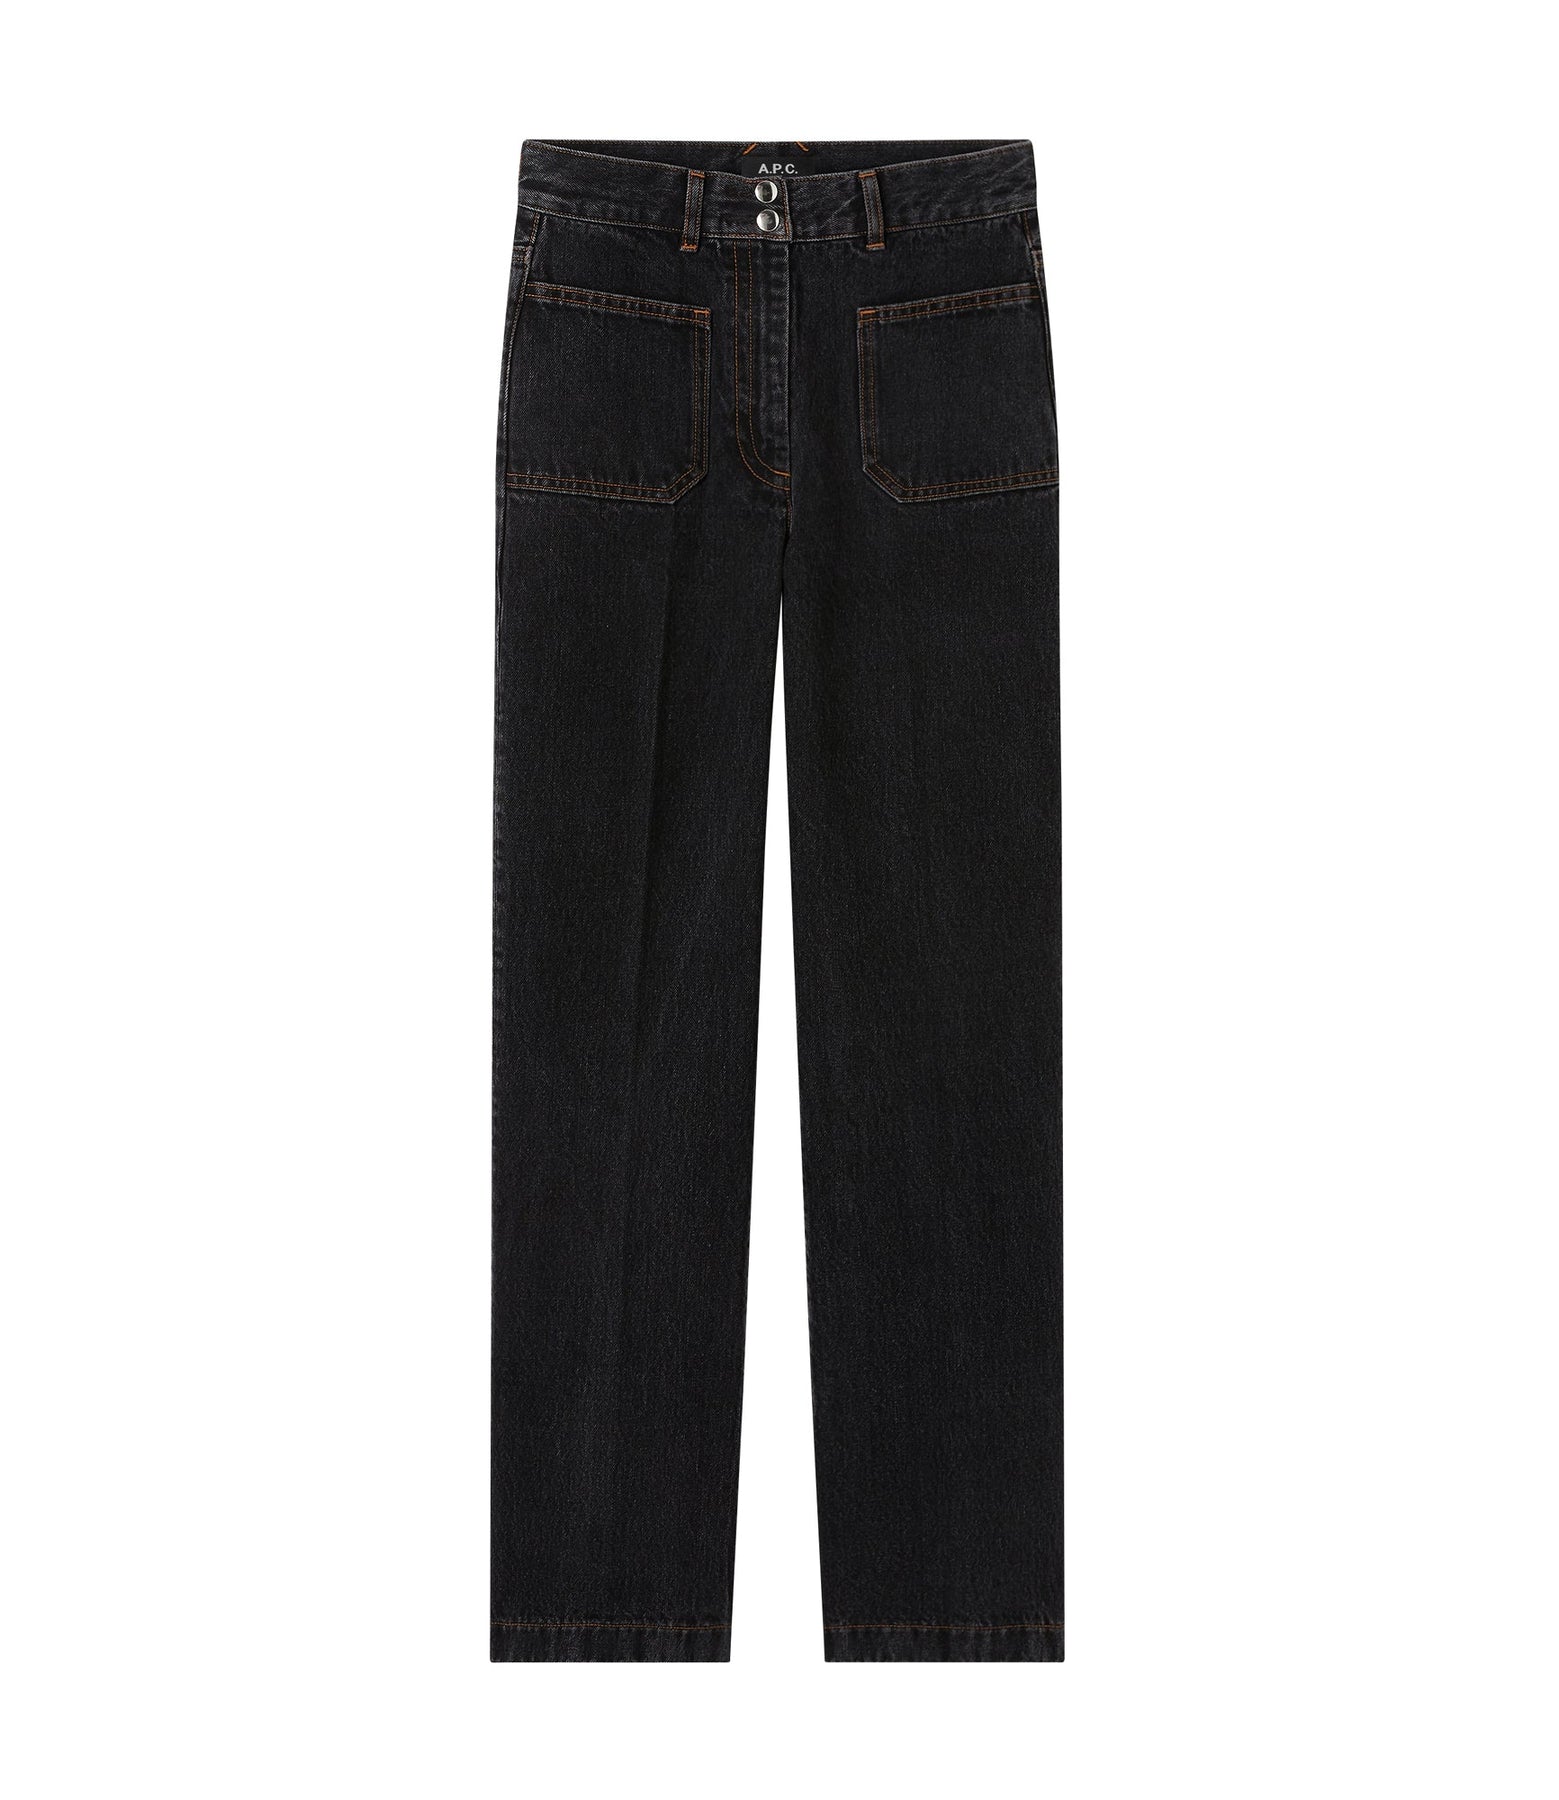 APC Nikki jeans | Shop Premium Outlets